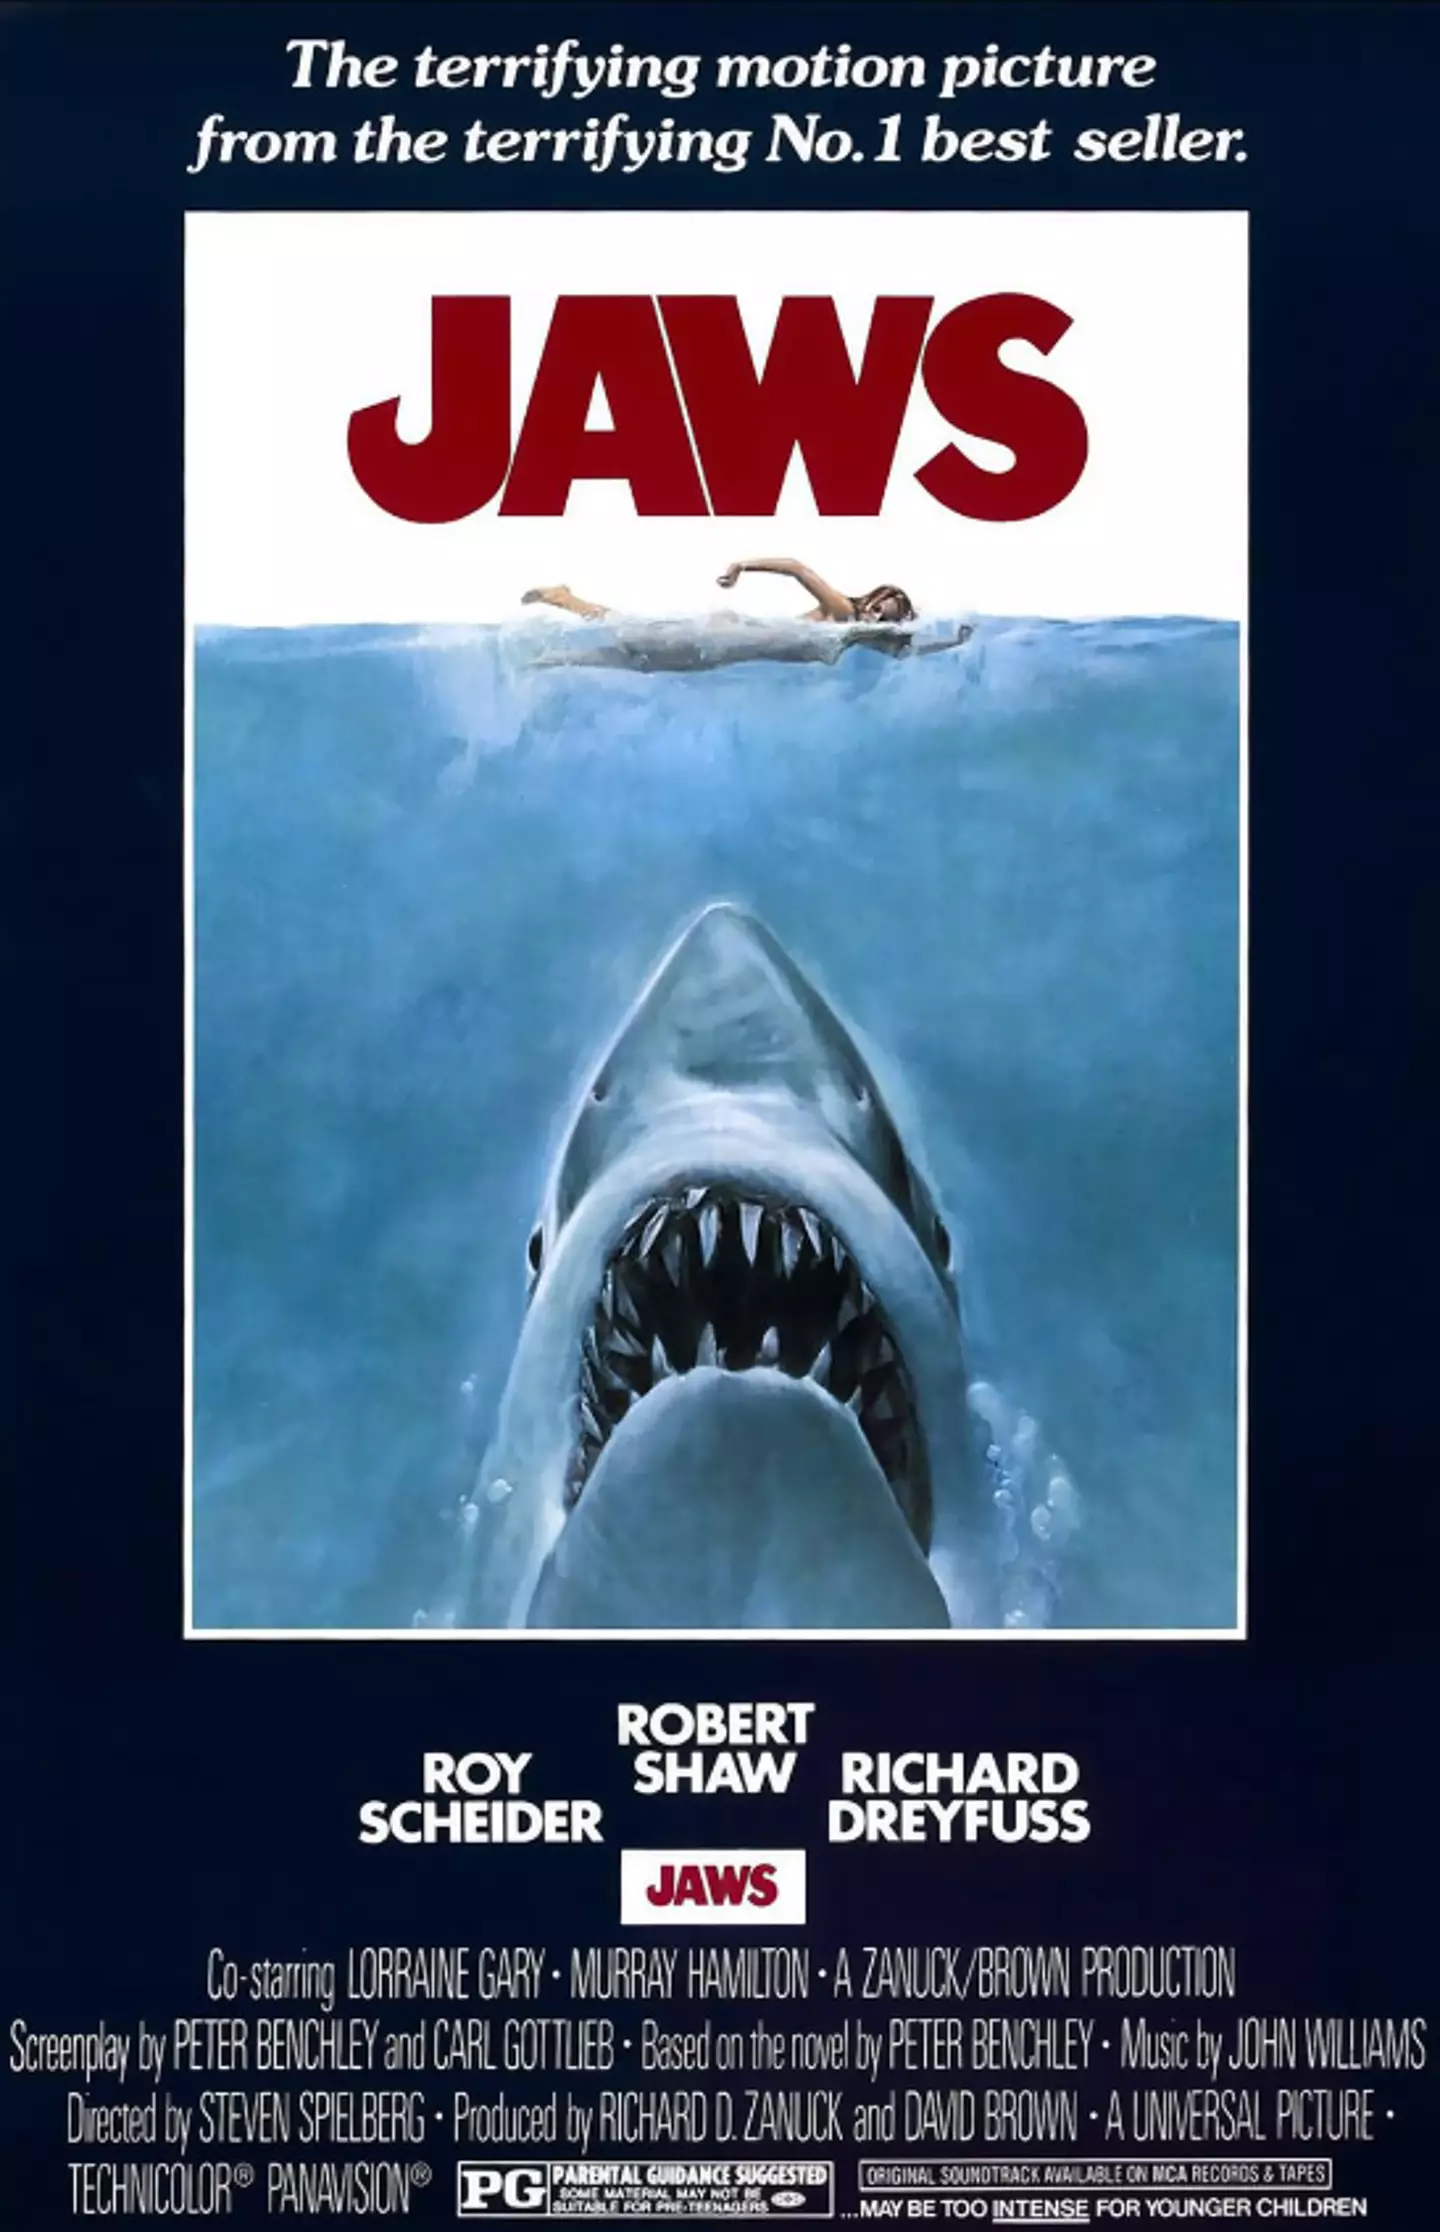 Jaws was Steven Spielberg's first masterpiece.